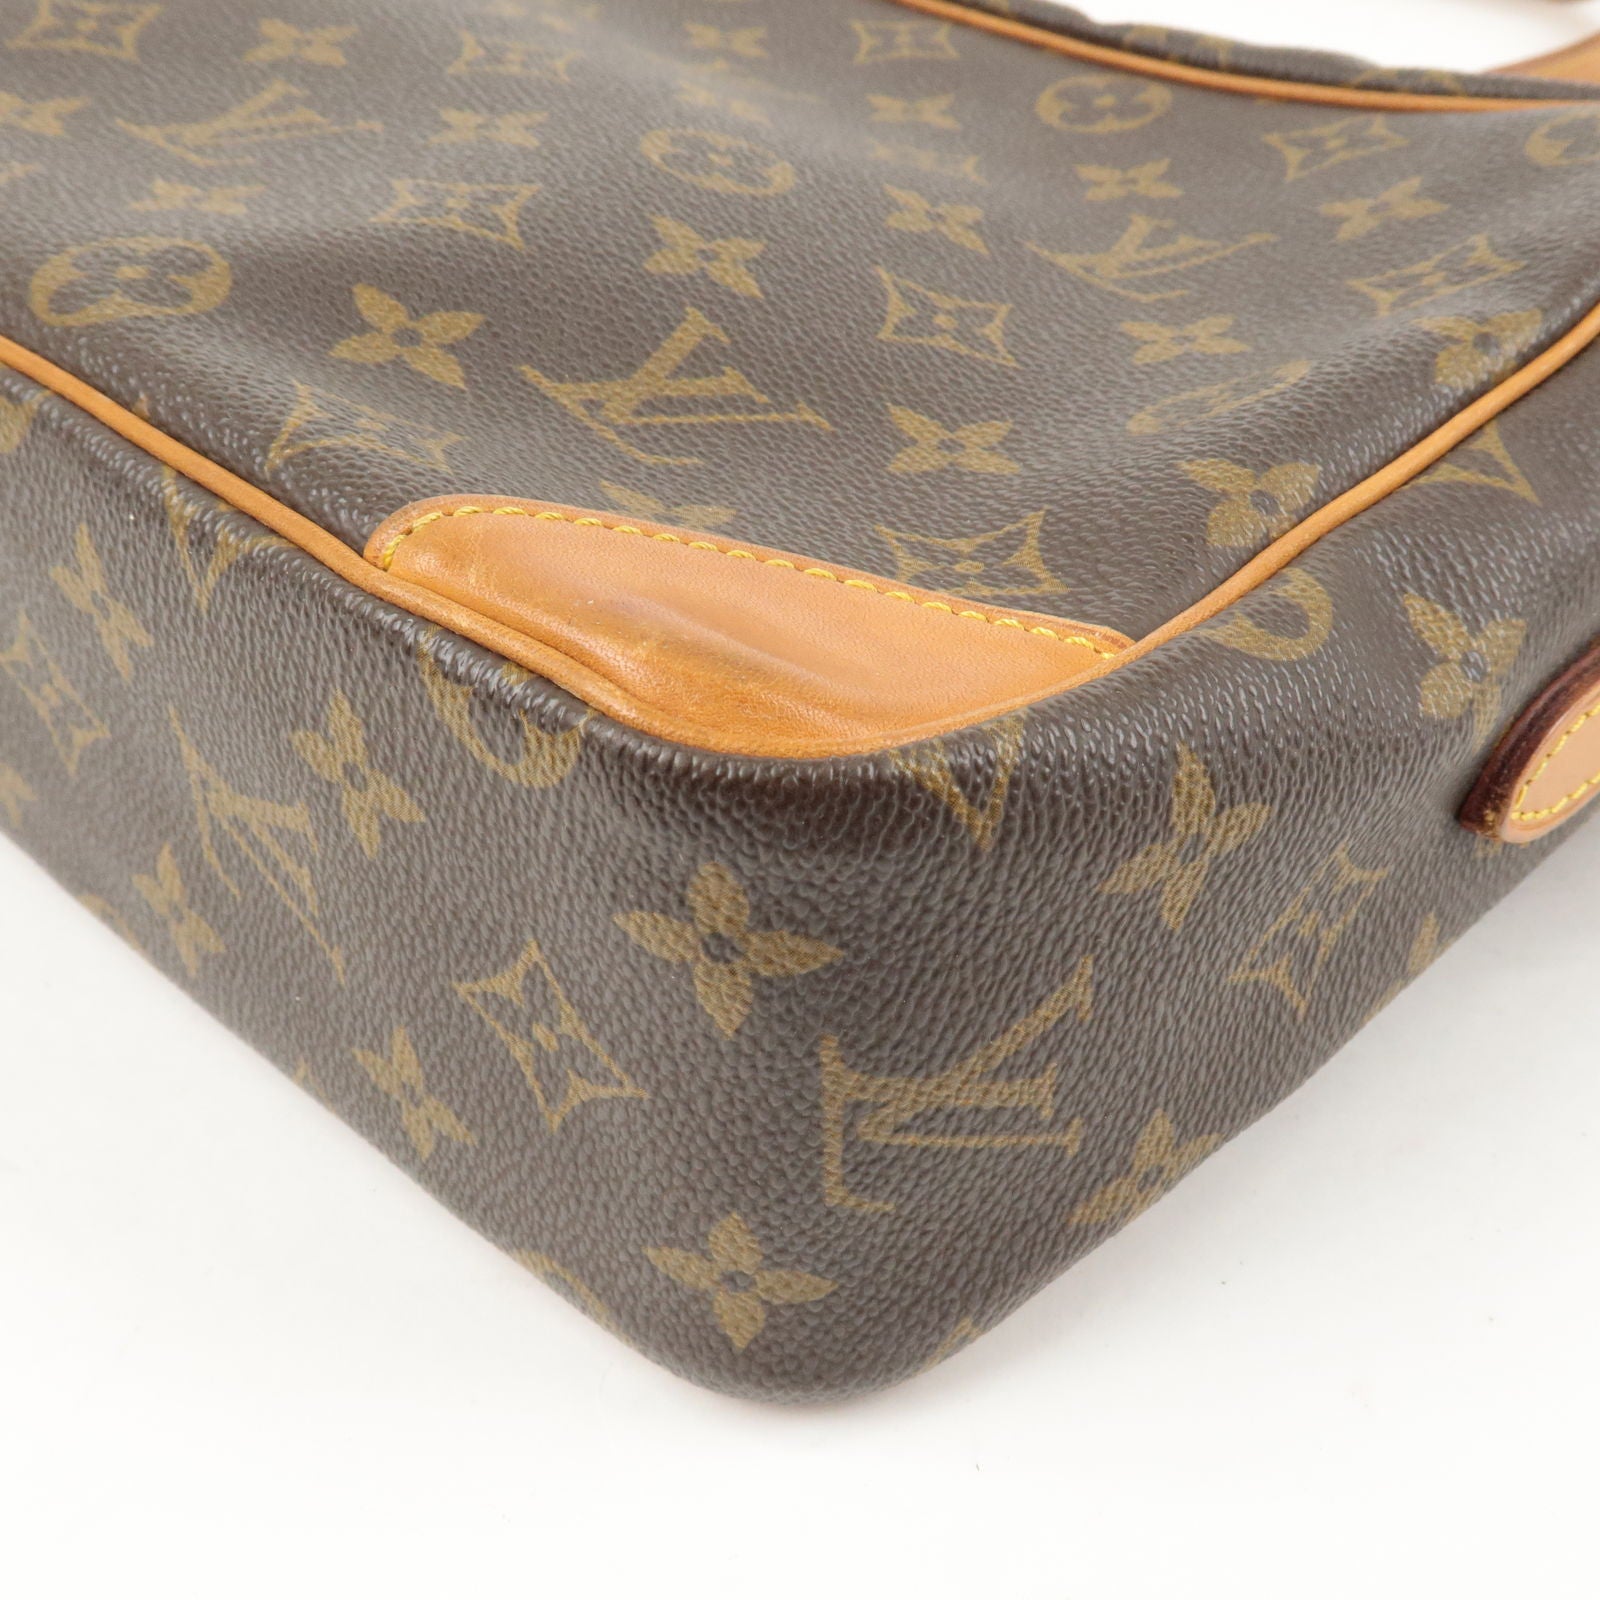 Louis-Vuitton-Monogram-Trocadero-30-Shoulder-Bag-M51272 – dct